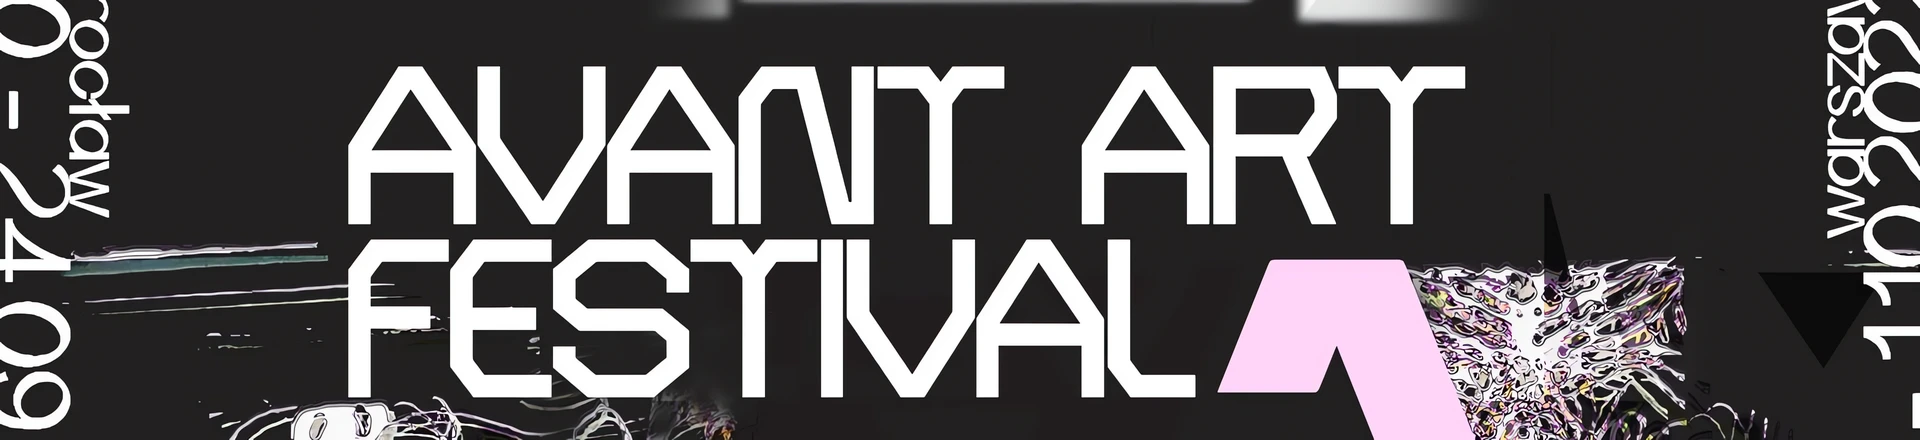 Avant Art Festival w Warszawie